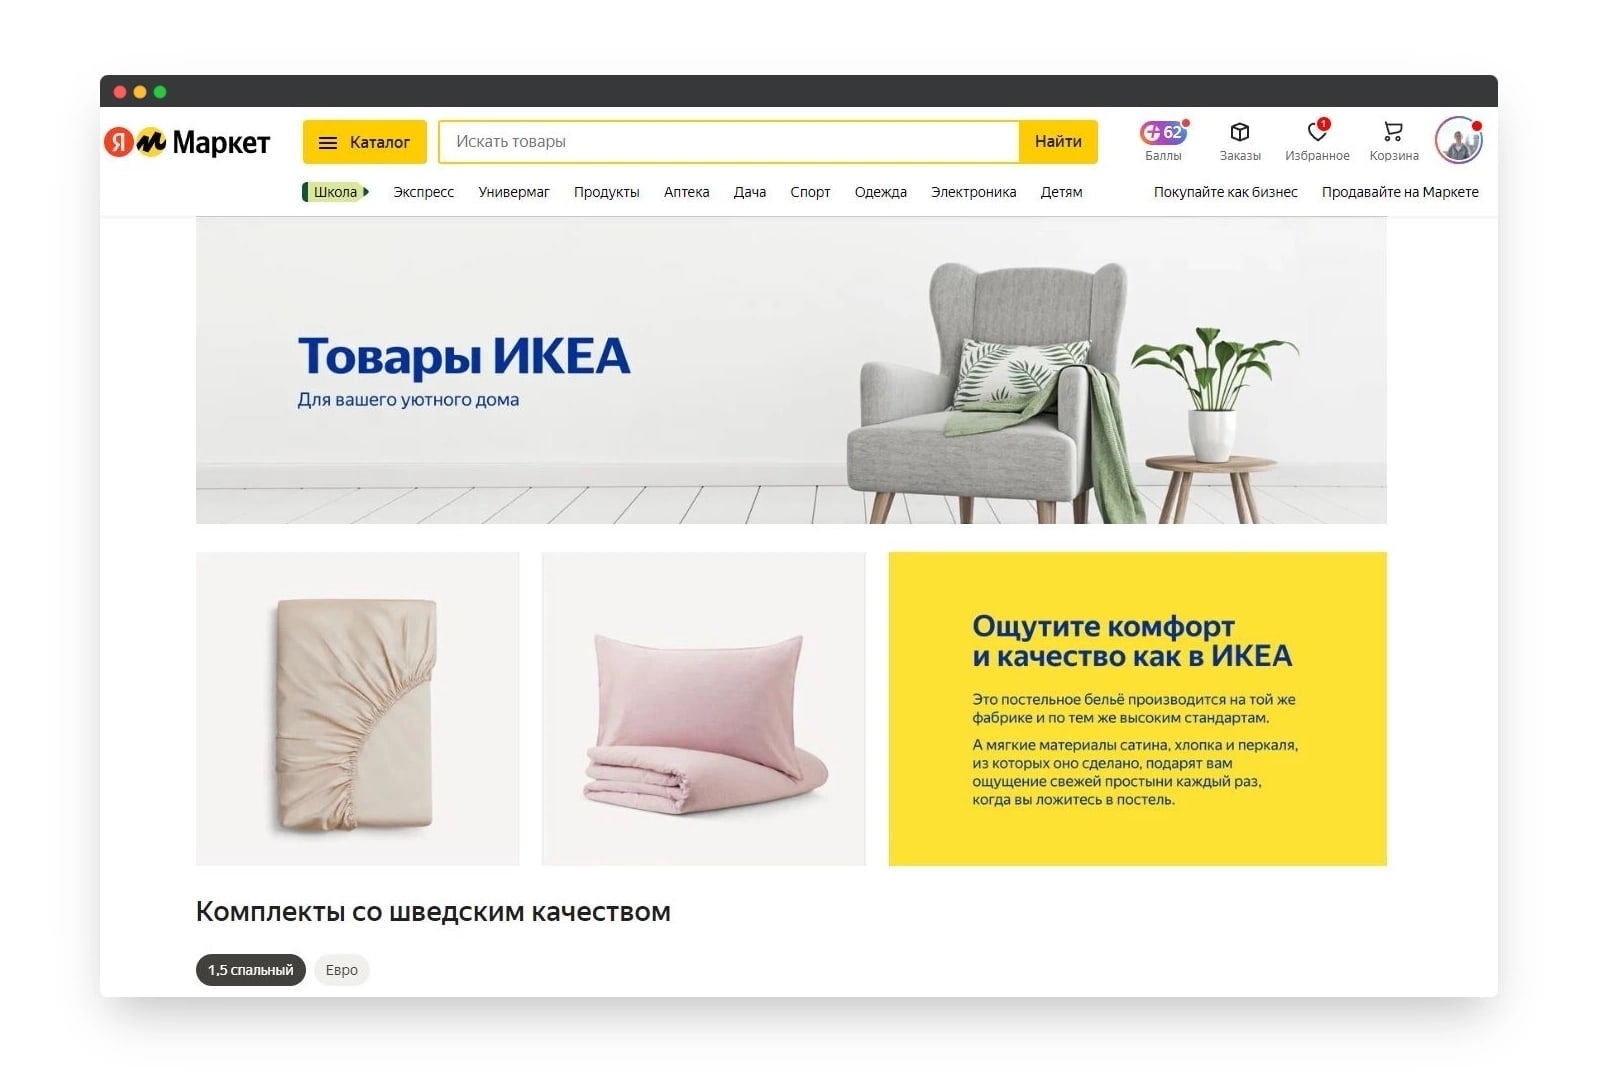 Санкции - санкциями, а бизнес - бизнесом: «Яндекс.Маркет» начал продавать товары от поставщиков IKEA.  